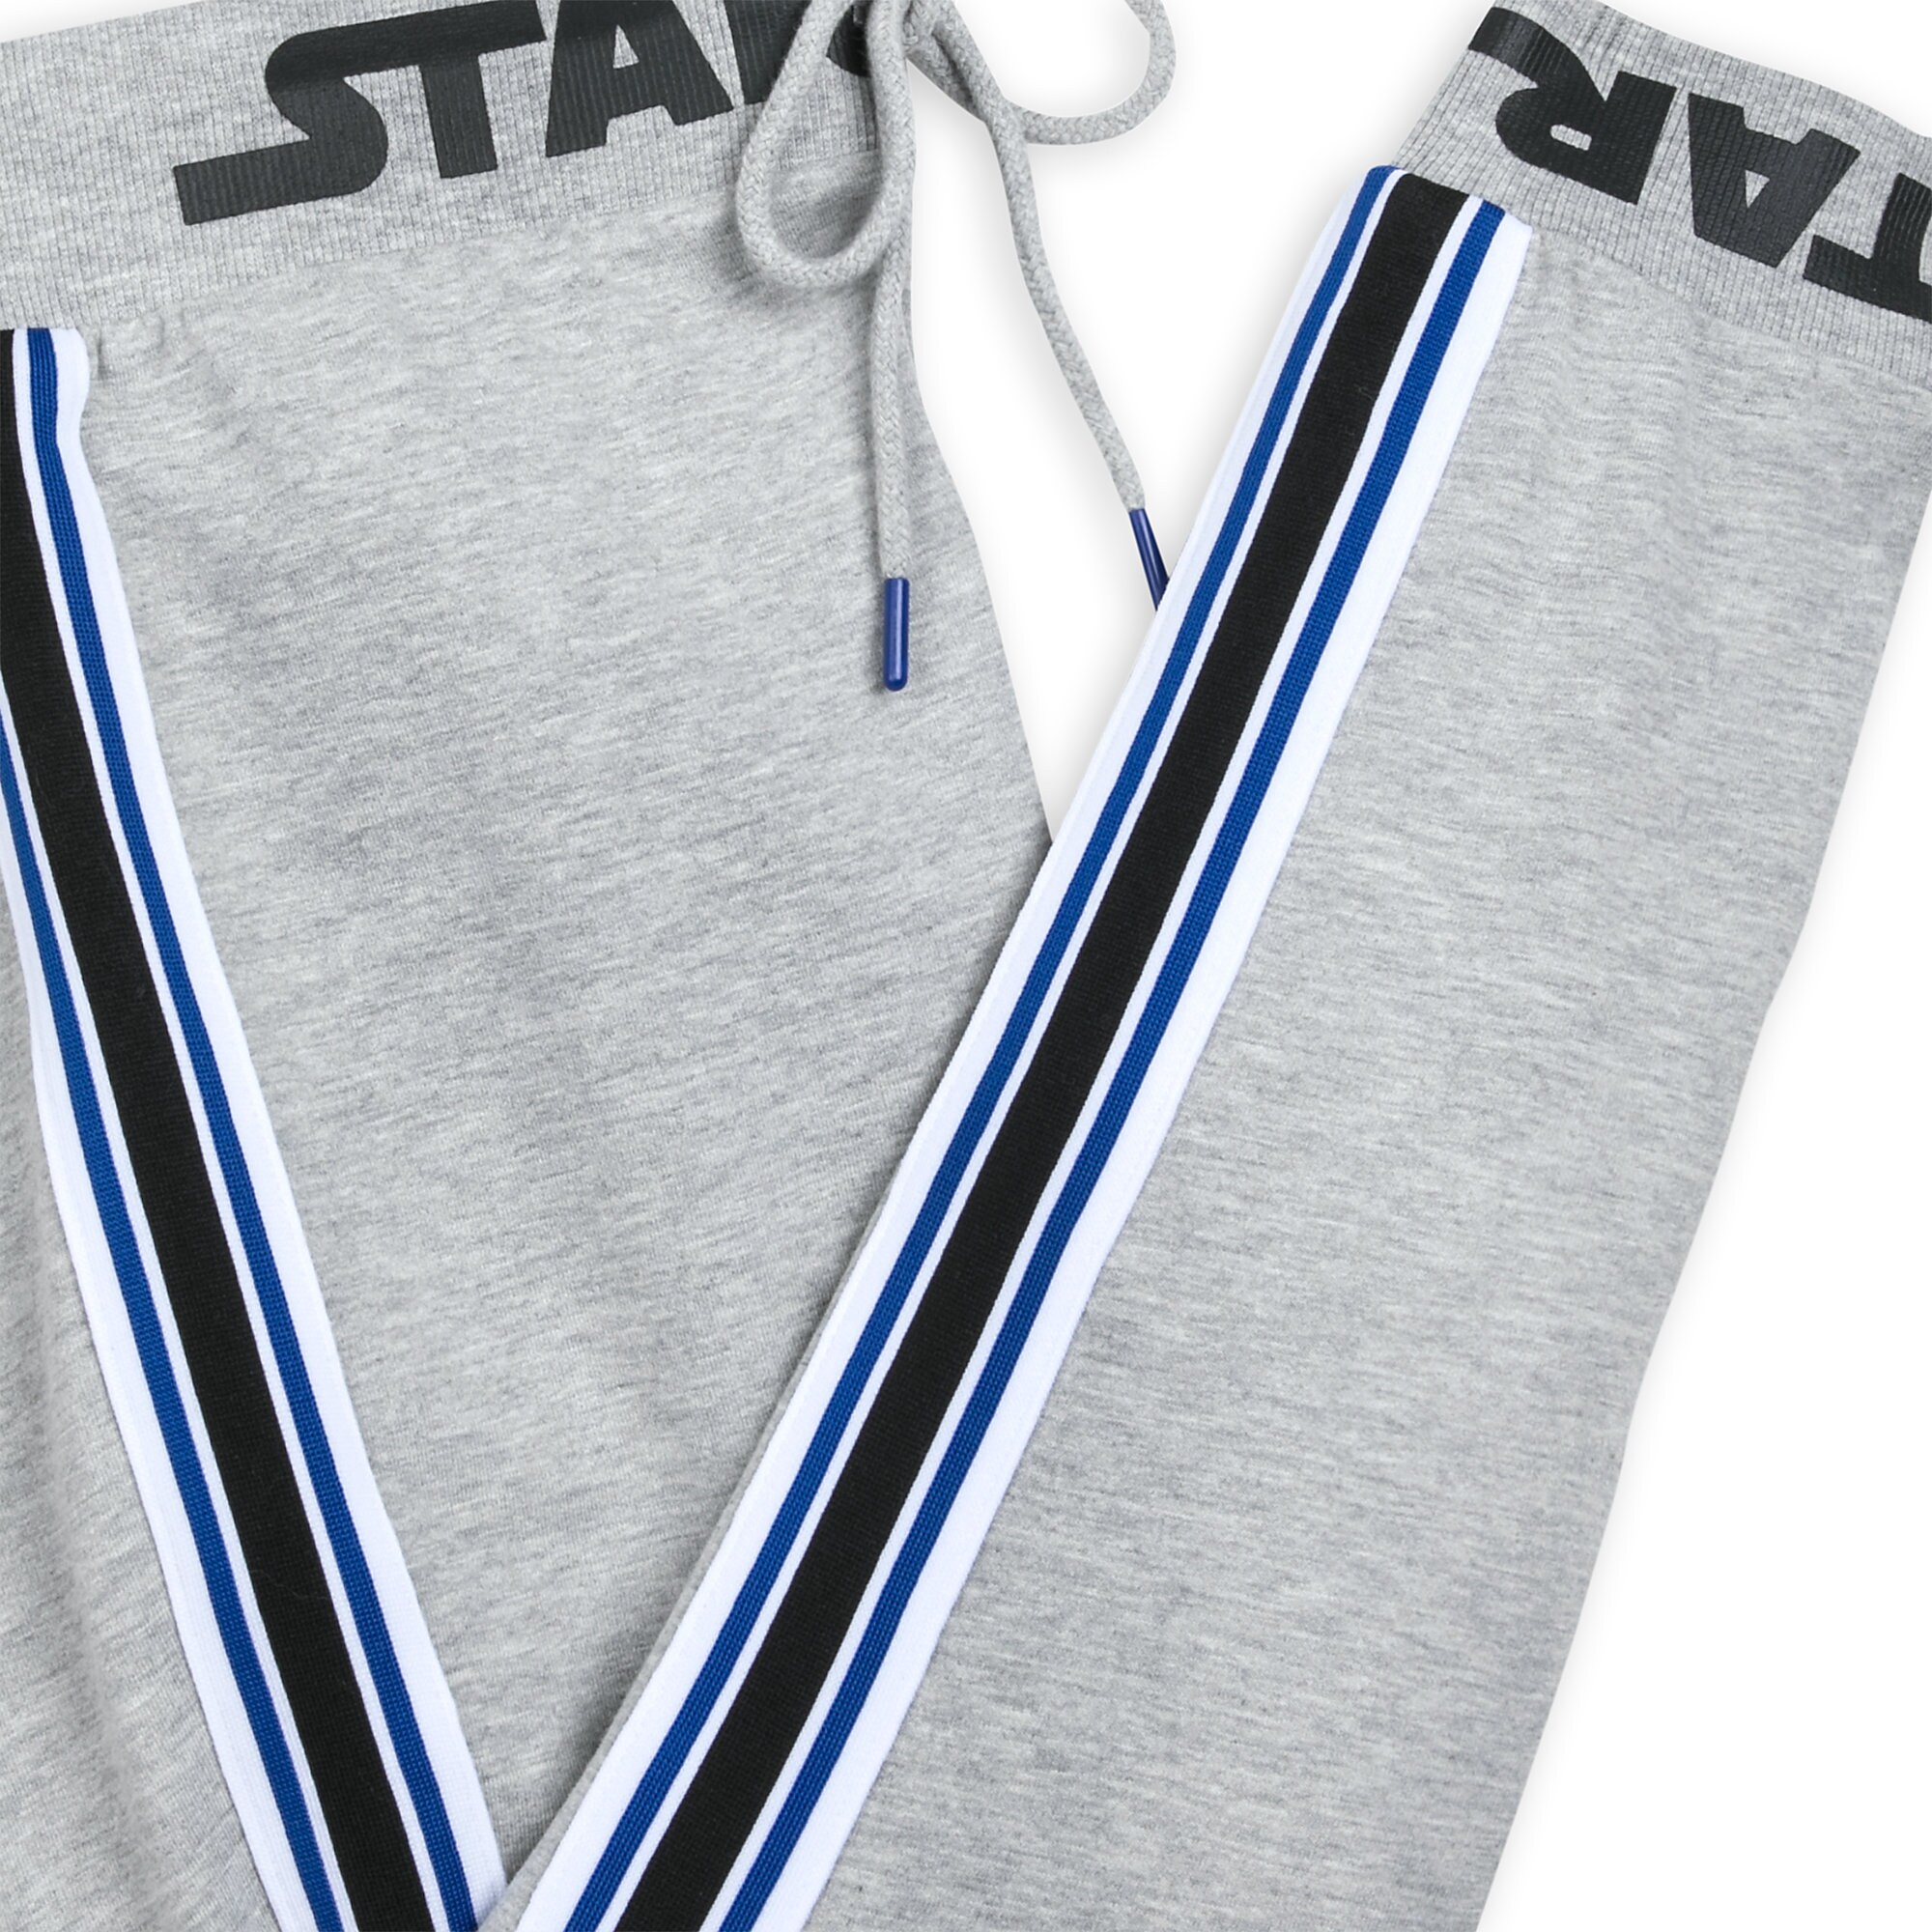 Star Wars Logo Sweatpants for Women